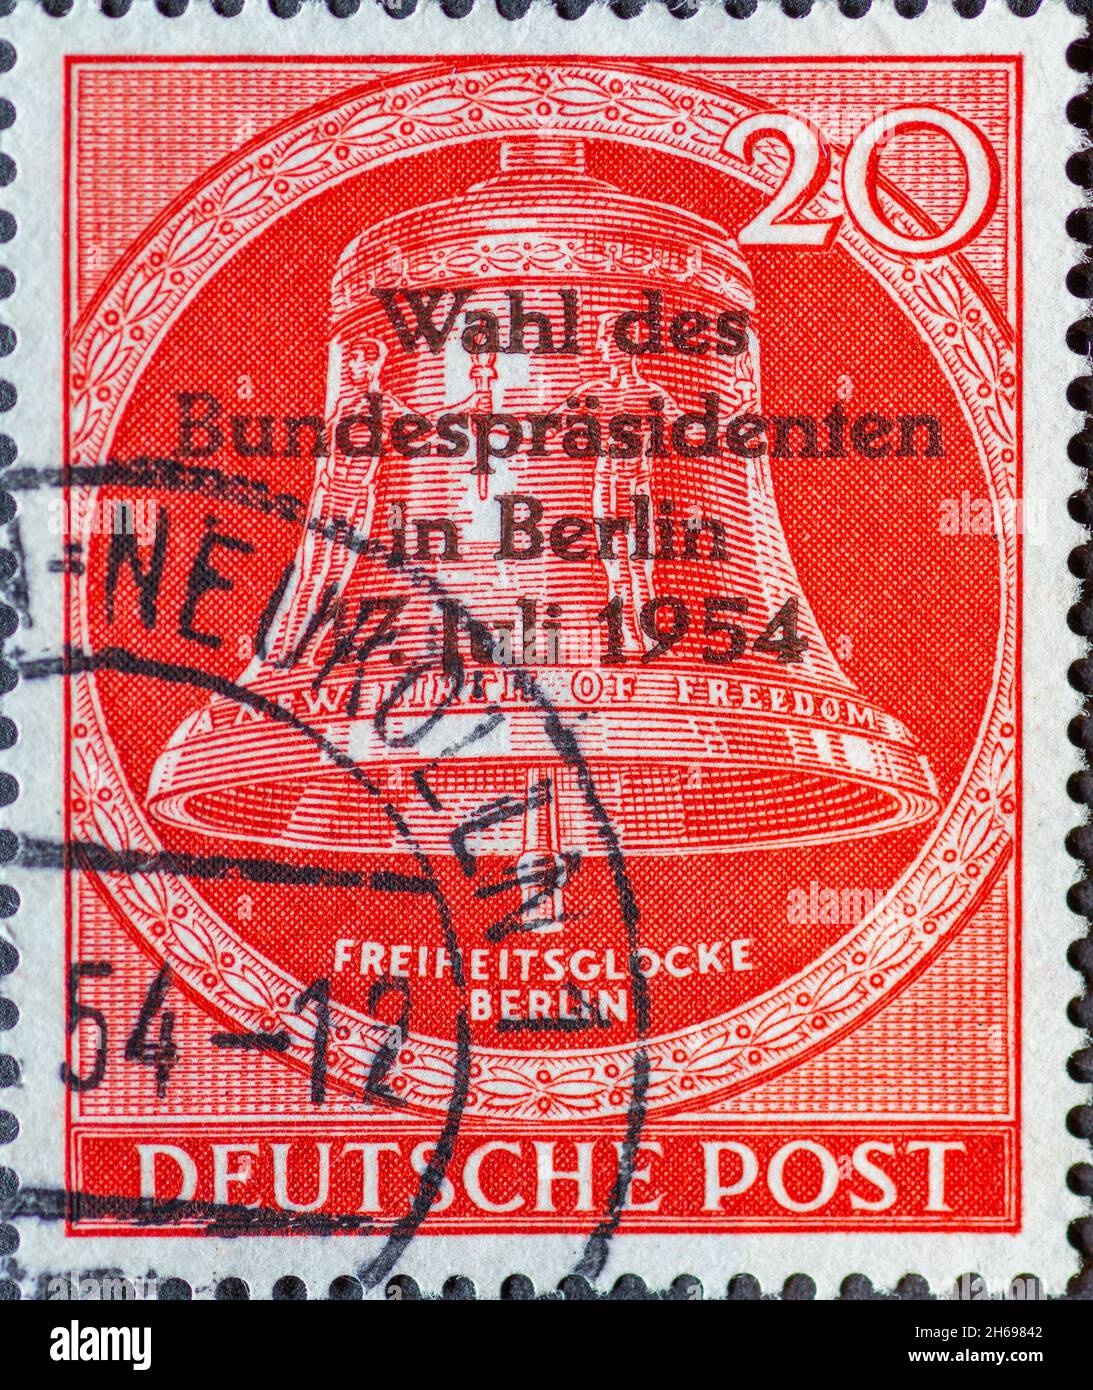 ALLEMAGNE, Berlin - VERS 1954: Timbre-poste de l'Allemagne, Berlin montrant la cloche de la liberté avec le texte: Nouvelle naissance de la liberté.Clapper au milieu Banque D'Images